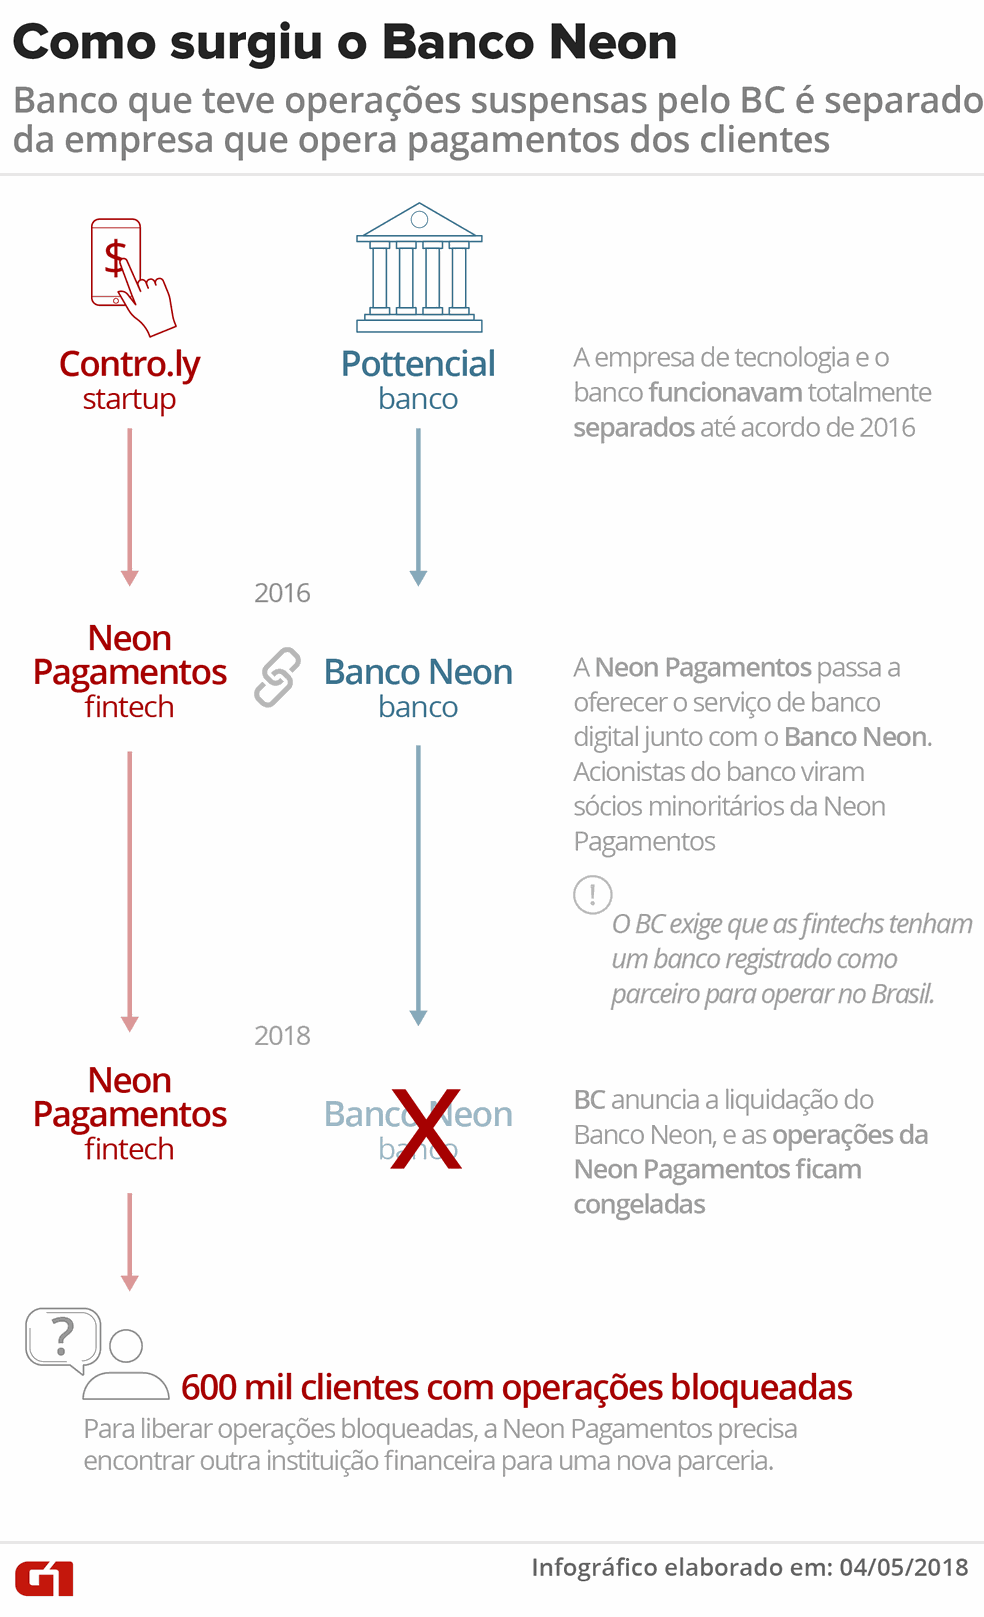 OperaÃ§Ãµes do Banco Neon sÃ£o suspensas; veja como funcionava o negÃ³cio (Foto: InfogrÃ¡fico: Igor Estrella/G1)